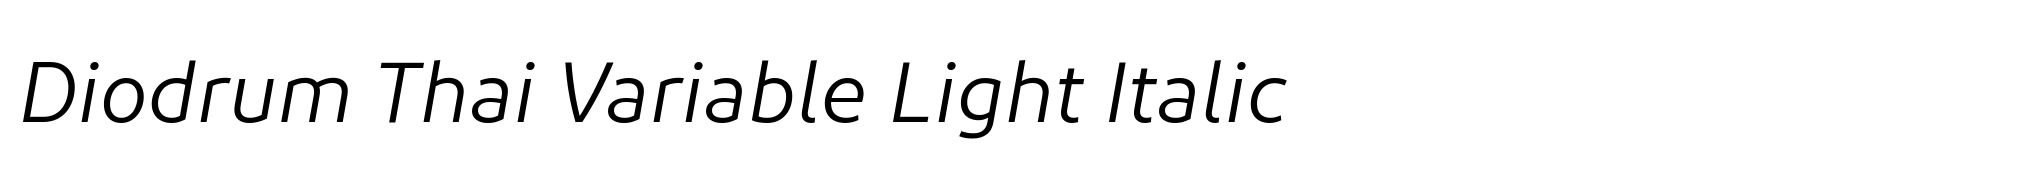 Diodrum Thai Variable Light Italic image